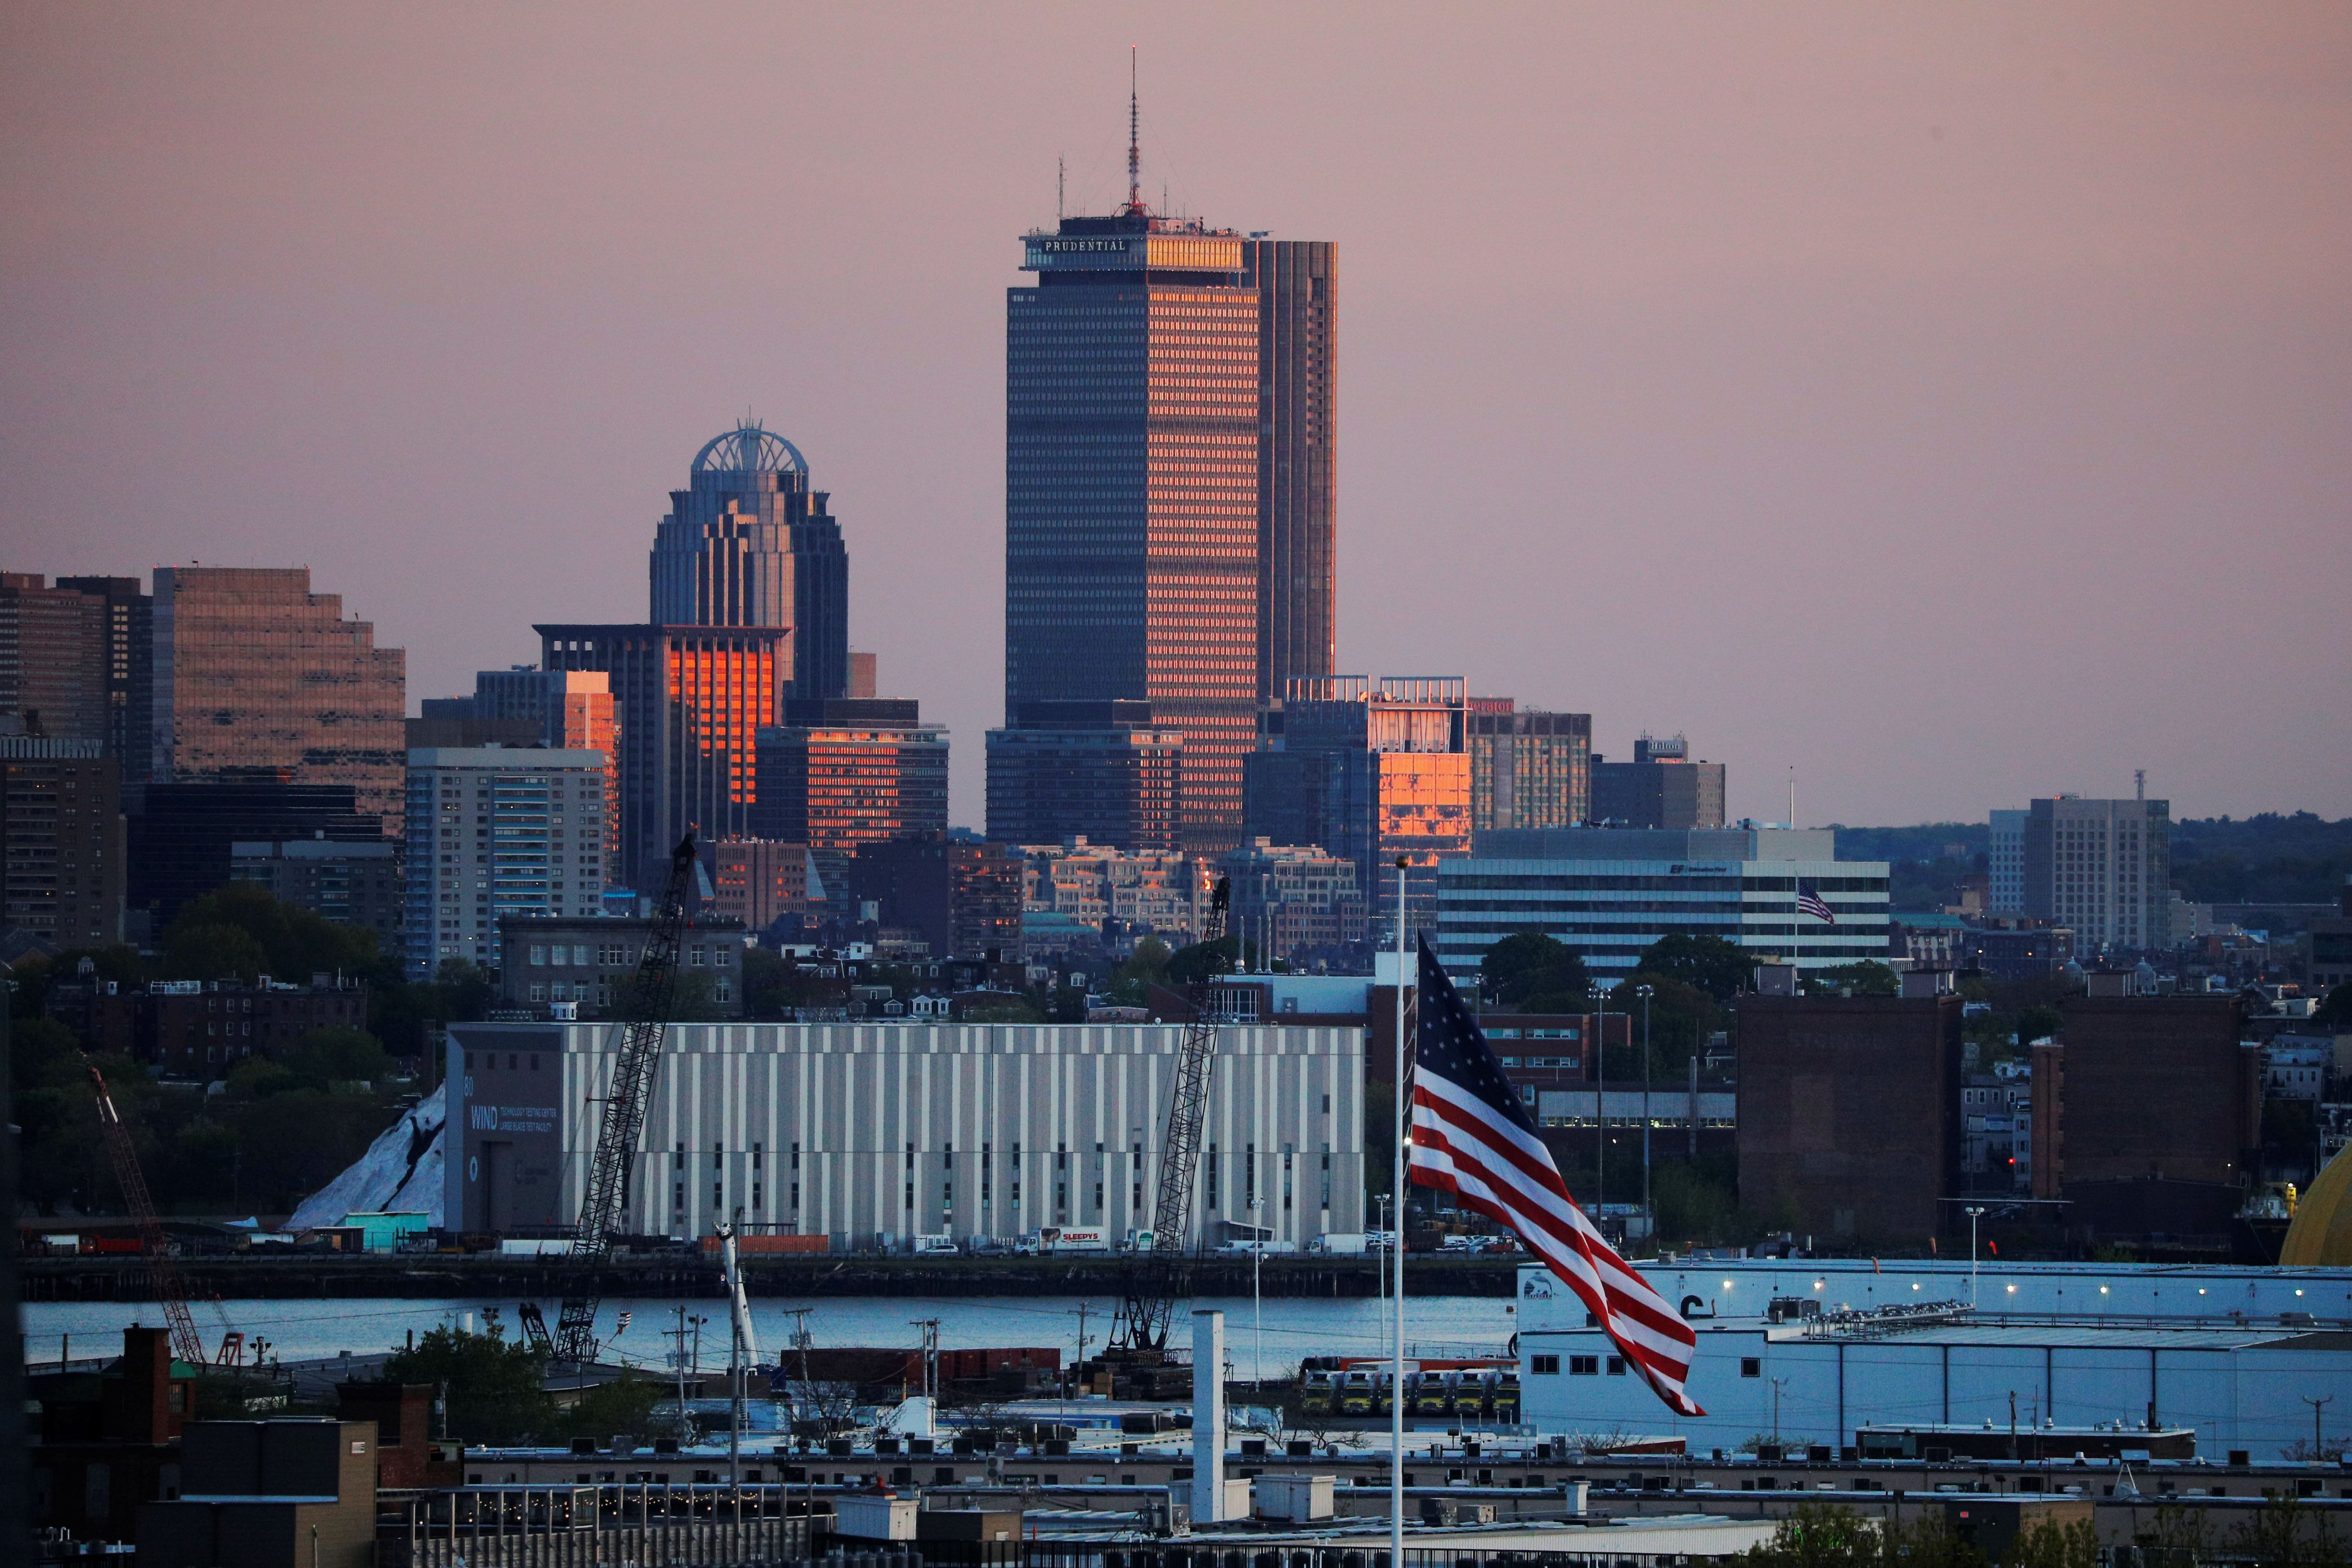 Portland, en Maine, y Boston, en Massachusetts, sobresalen en la costa este de Estados Unidos como ciudades con buena calidad de vida. (REUTERS/Brian Snyder)